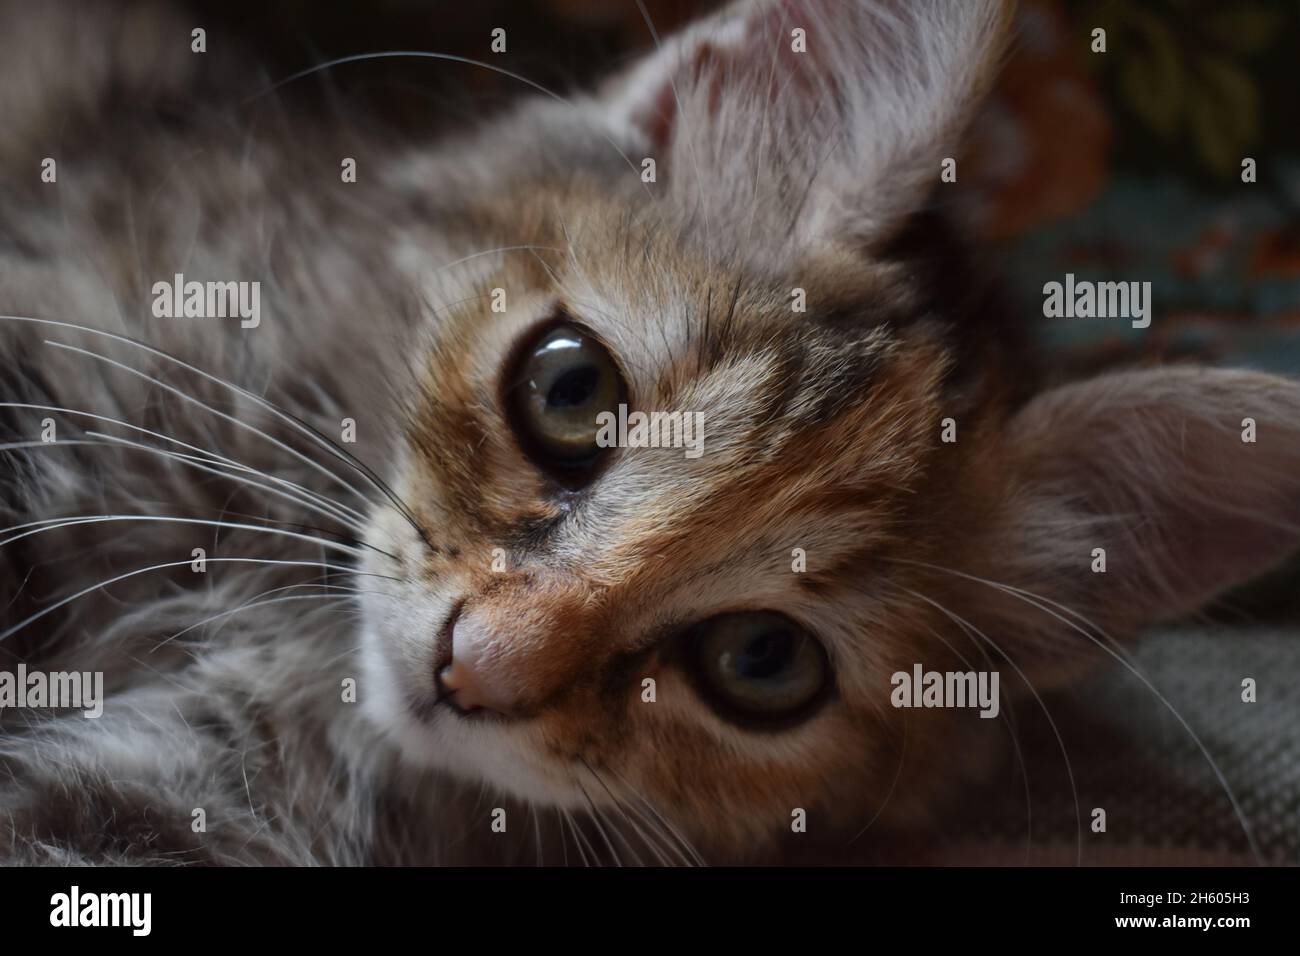 Photo of a just awake gray kitten Stock Photo